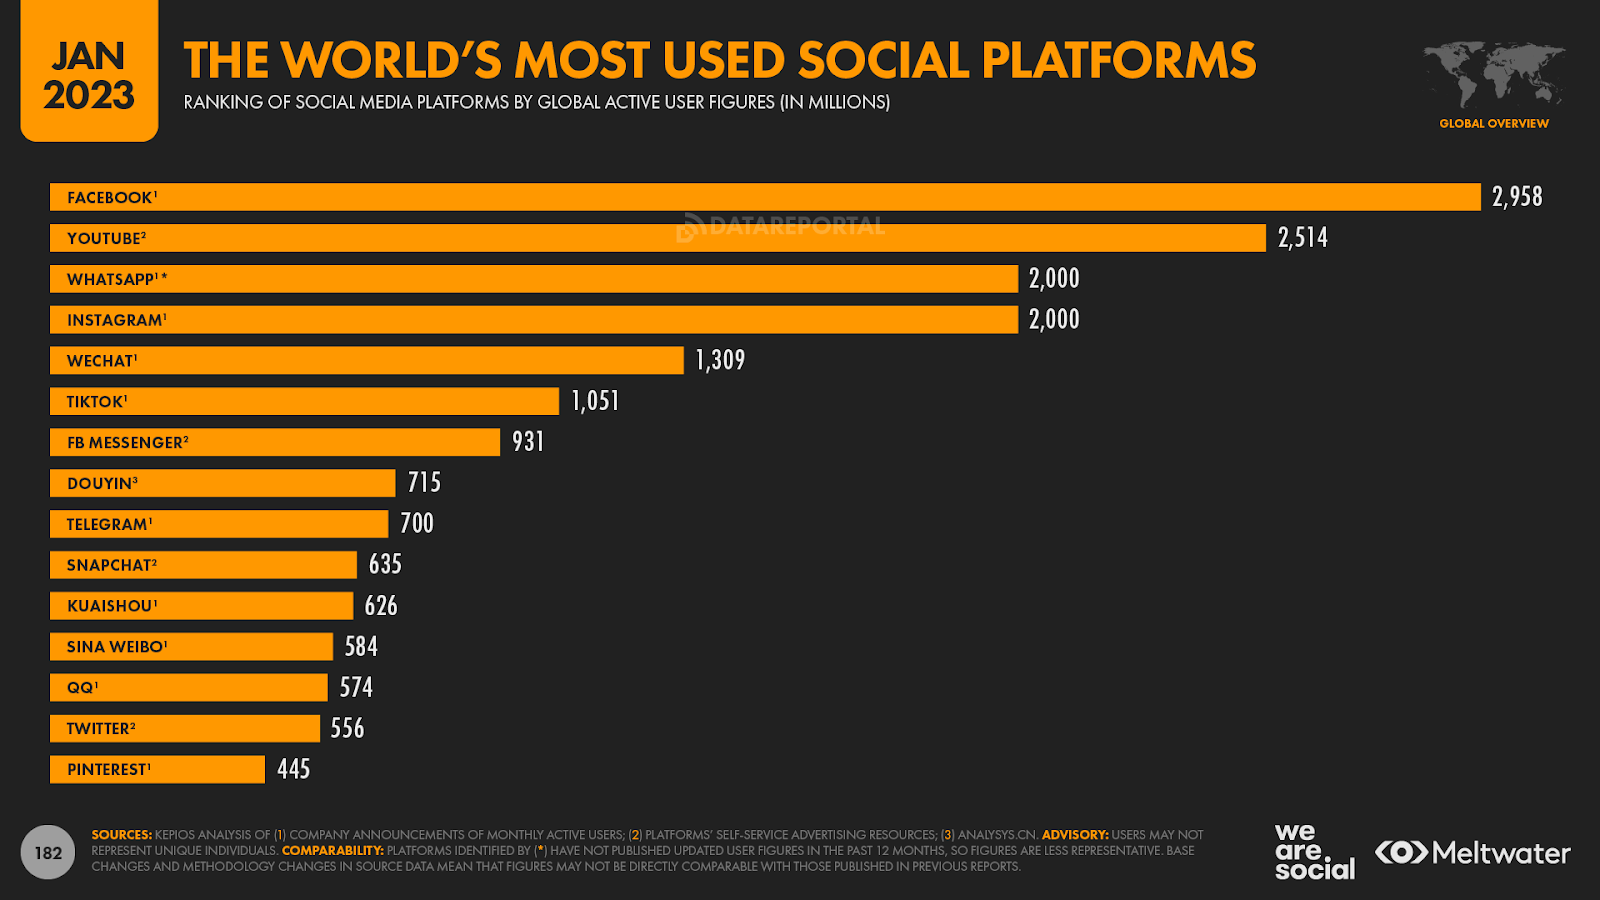 Quảng cáo trực tuyến cho doanh nghiệp: Các nền tảng truyền thông xã hội được sử dụng nhiều nhất trên thế giới.